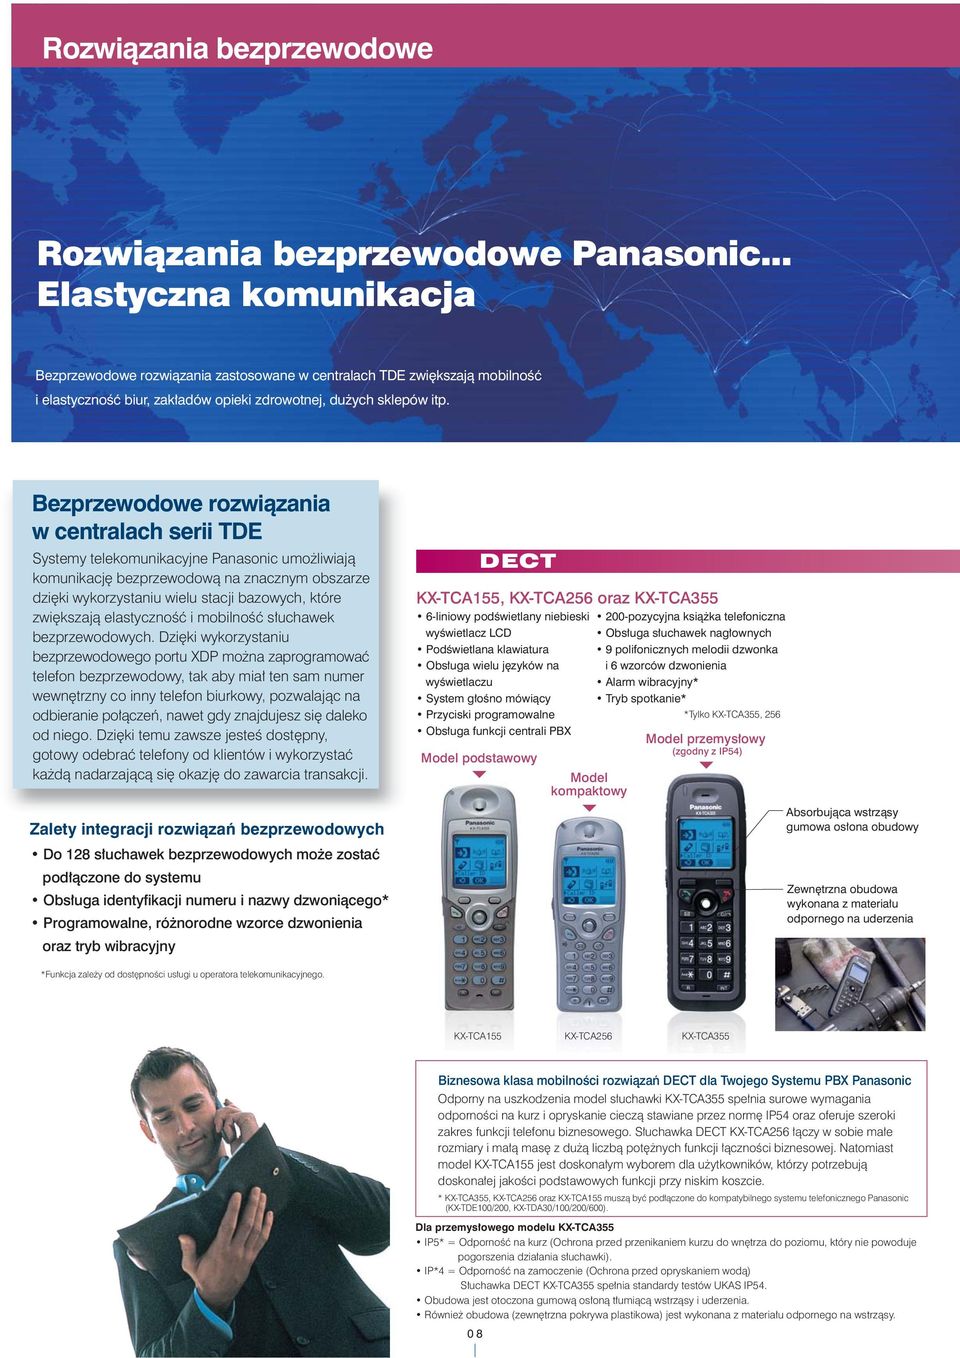 Bezprzewodowe rozwi¹zania w centralach serii Systemy telekomunikacyjne Panasonic umo liwiaj¹ komunikacjê bezprzewodow¹ na znacznym obszarze dziêki wykorzystaniu wielu stacji bazowych, które